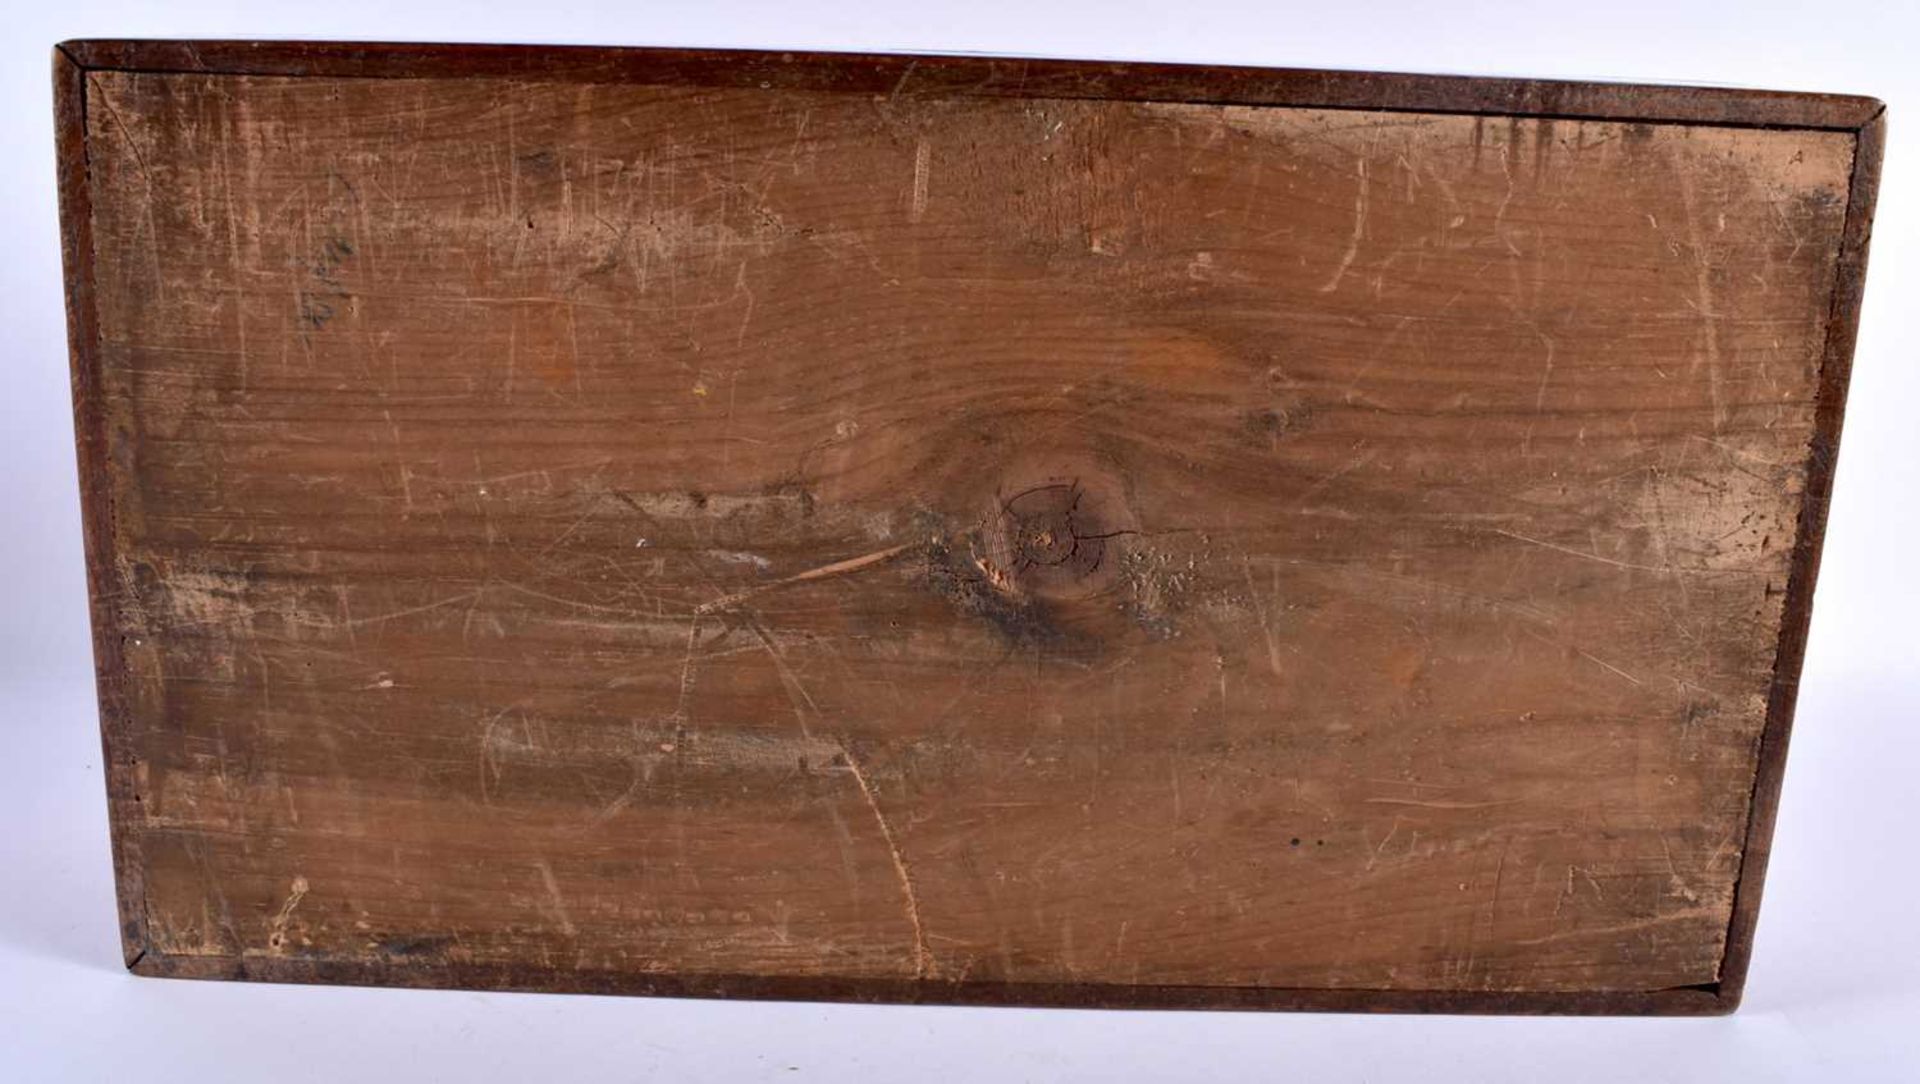 AN ANTIQUE GAMING COMPENDIUM within original mahogany box. 38 cm x 24 cm. - Image 7 of 7